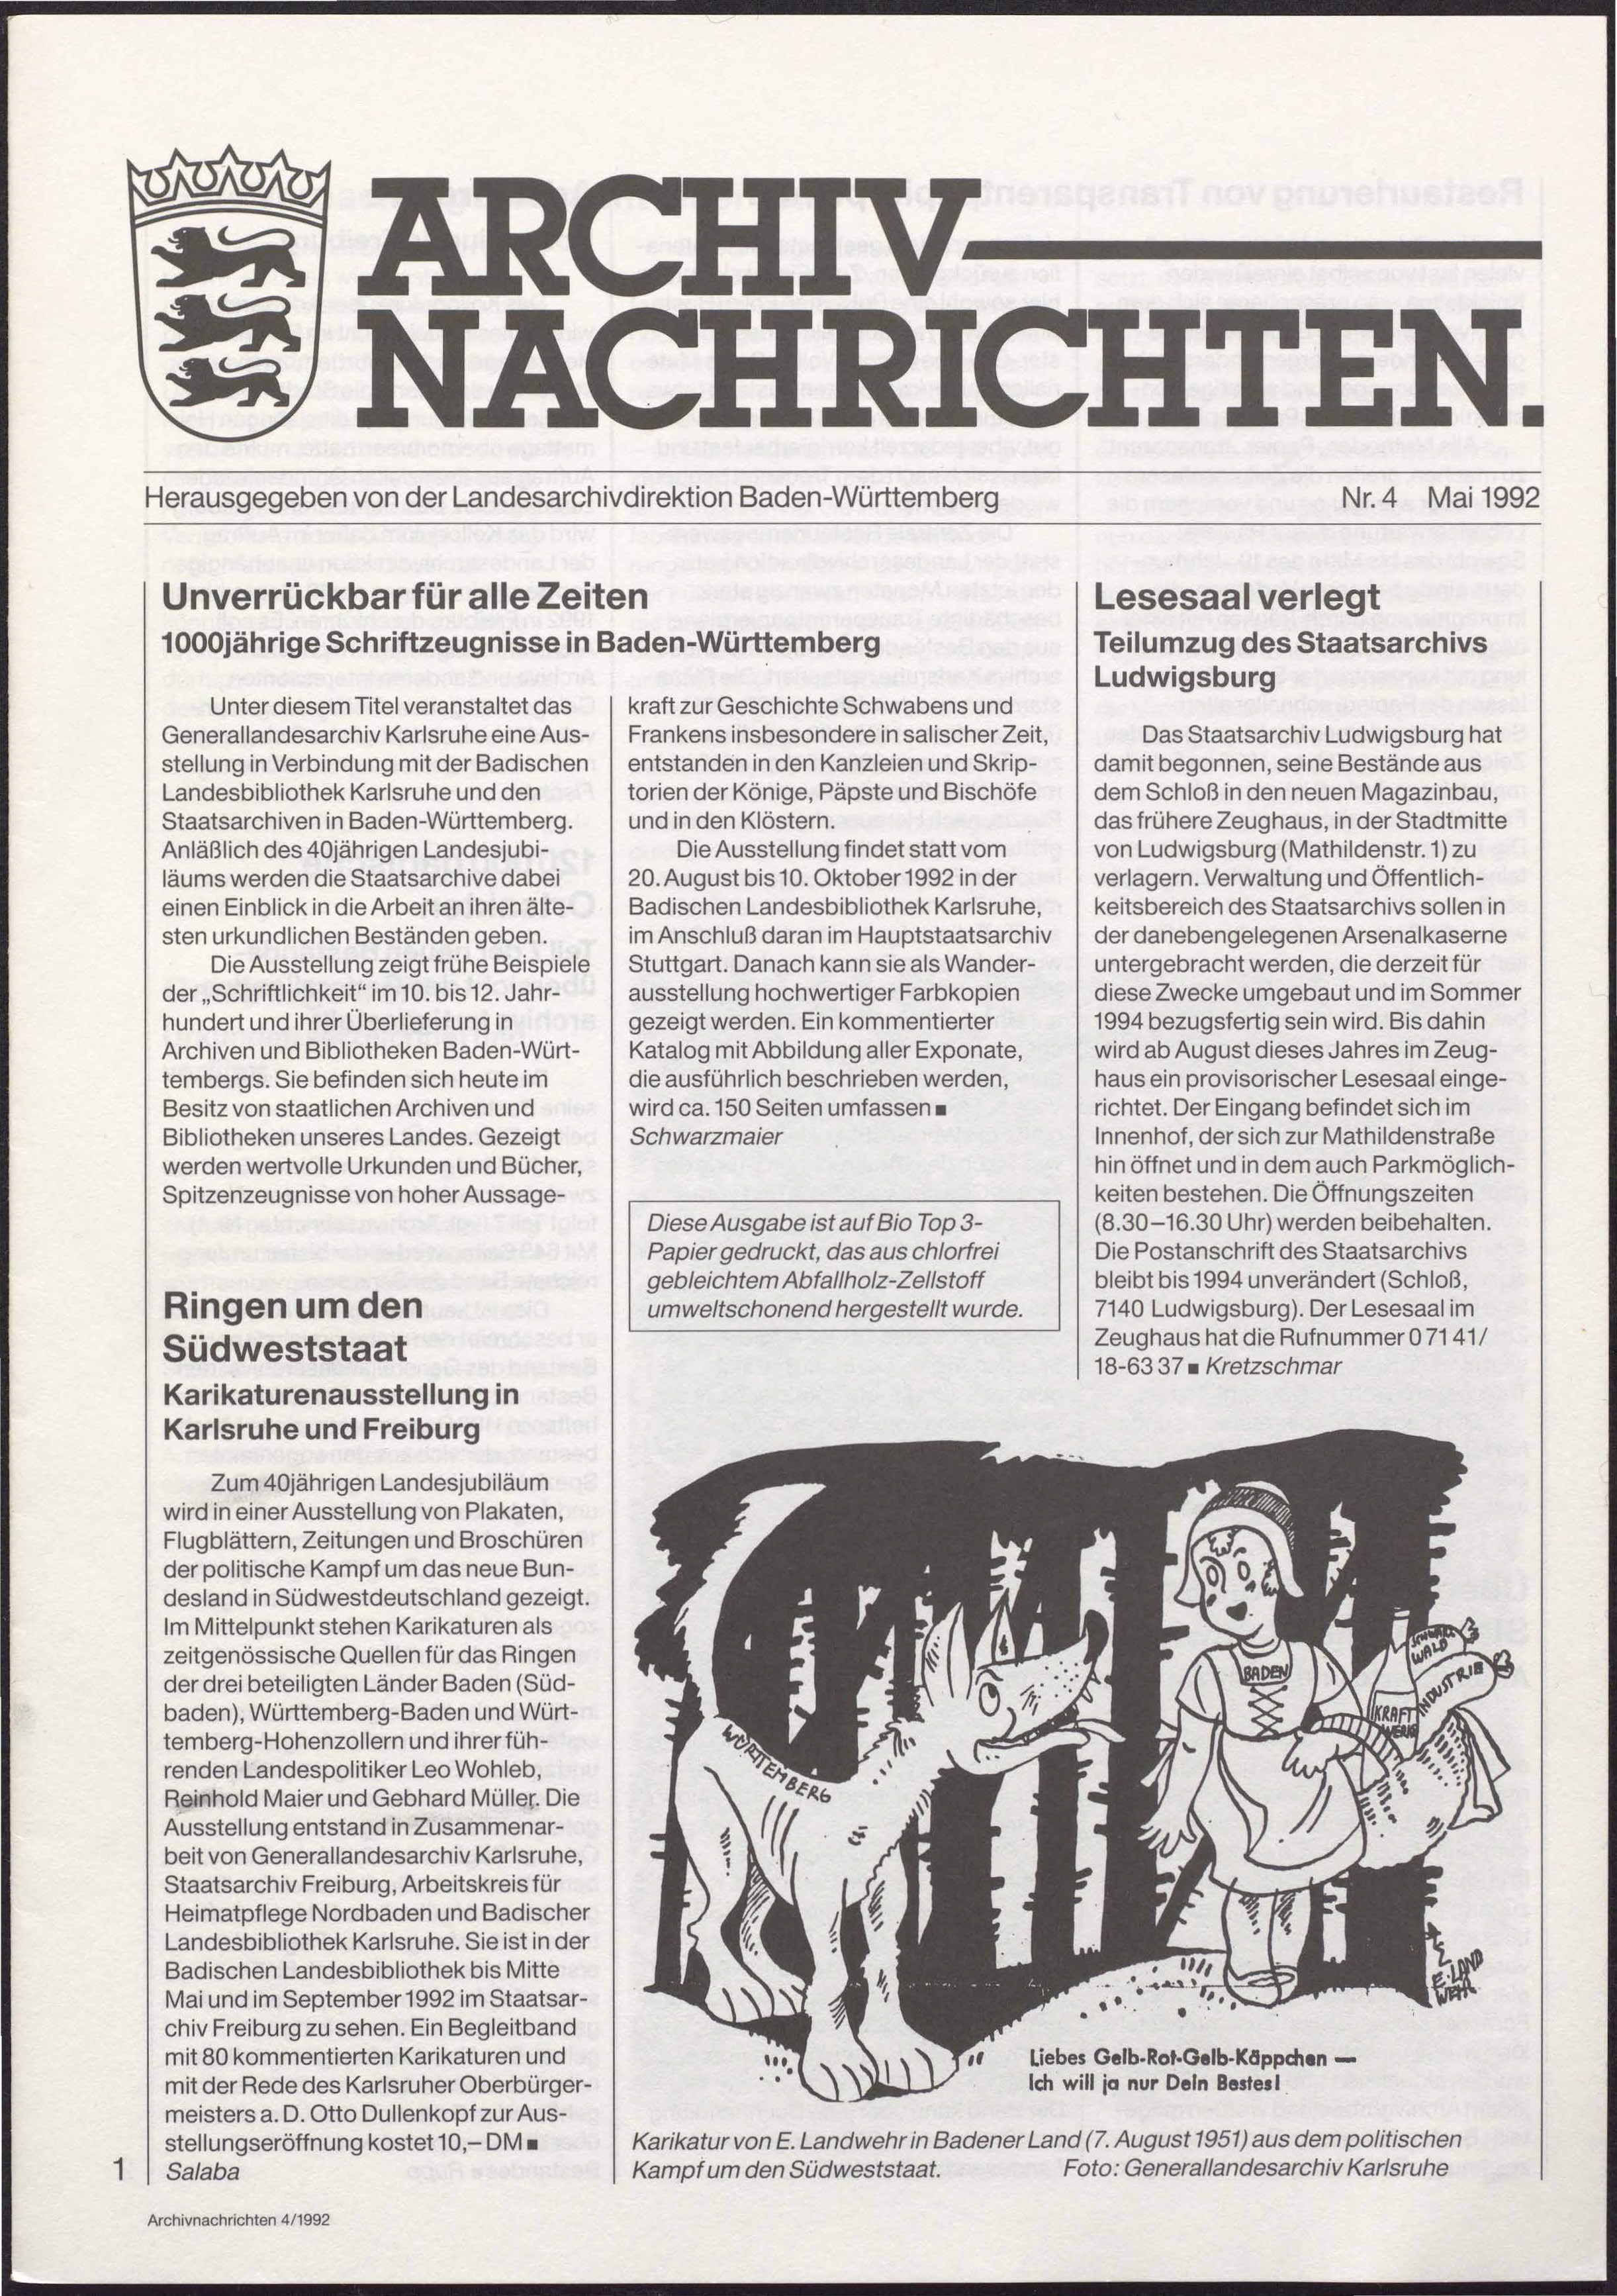                     Ansehen Nr. 4 (1992): Archivnachrichten
                